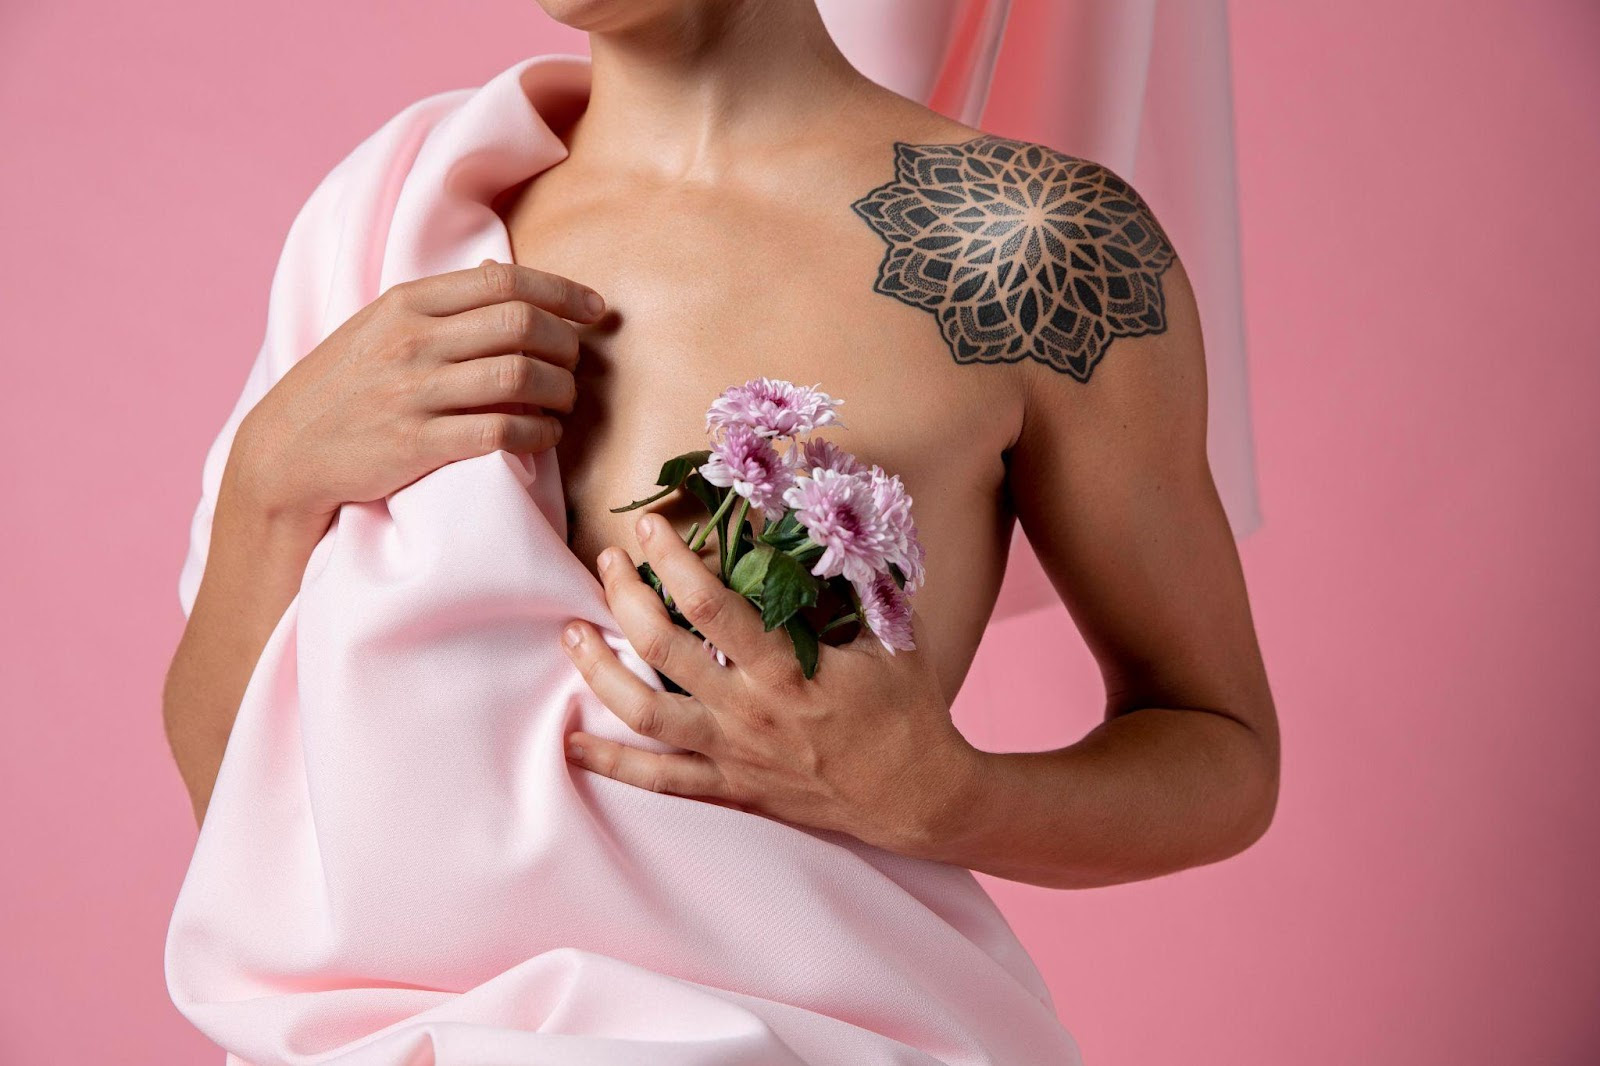 Tatuagens femininas delicadas que representam resiliência – Nova